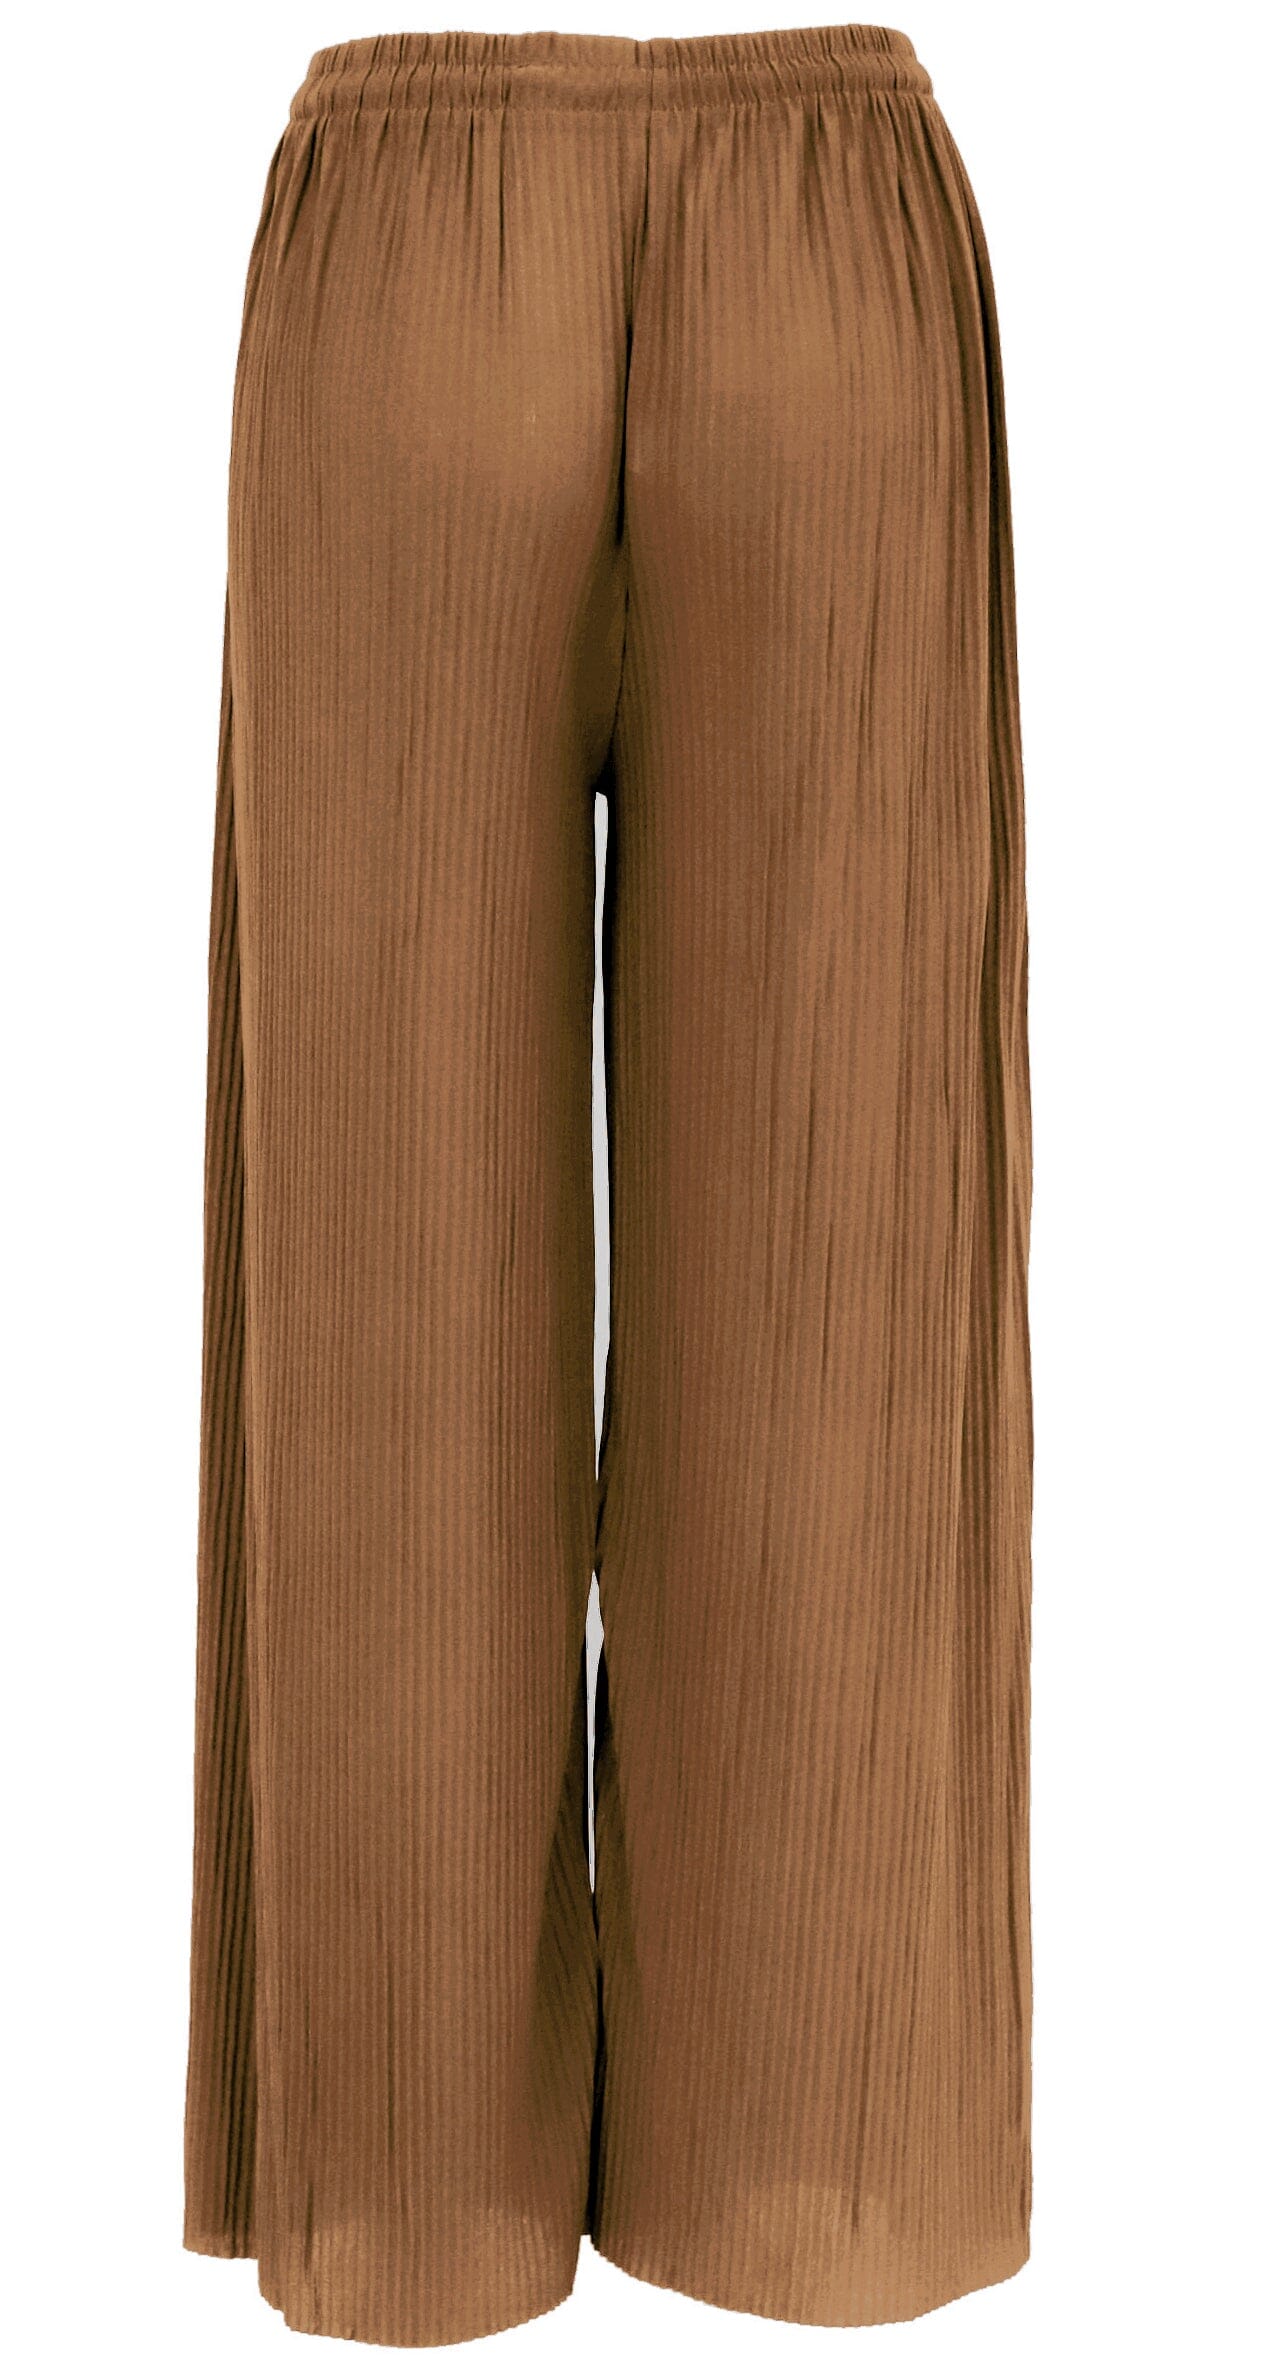 Pantalon Divin : Taille Haute, Plissé, Irrésistible Élégance Ajustable pantalon 